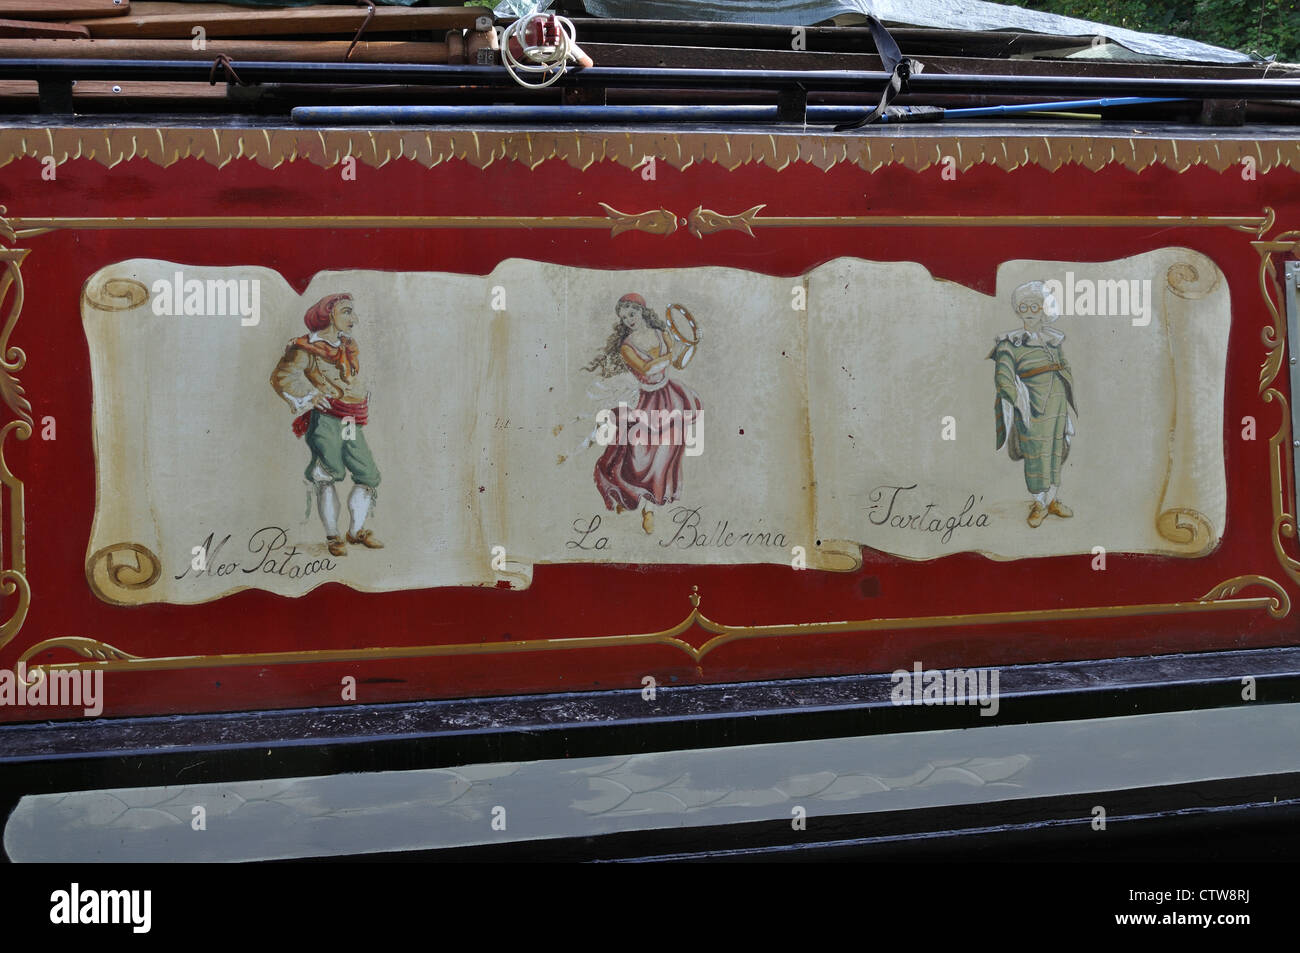 Maschere del Teatro della Commedia dell'Arte. Traditional Italian Comedy of the Crafts on side of narrowboat. Stock Photo